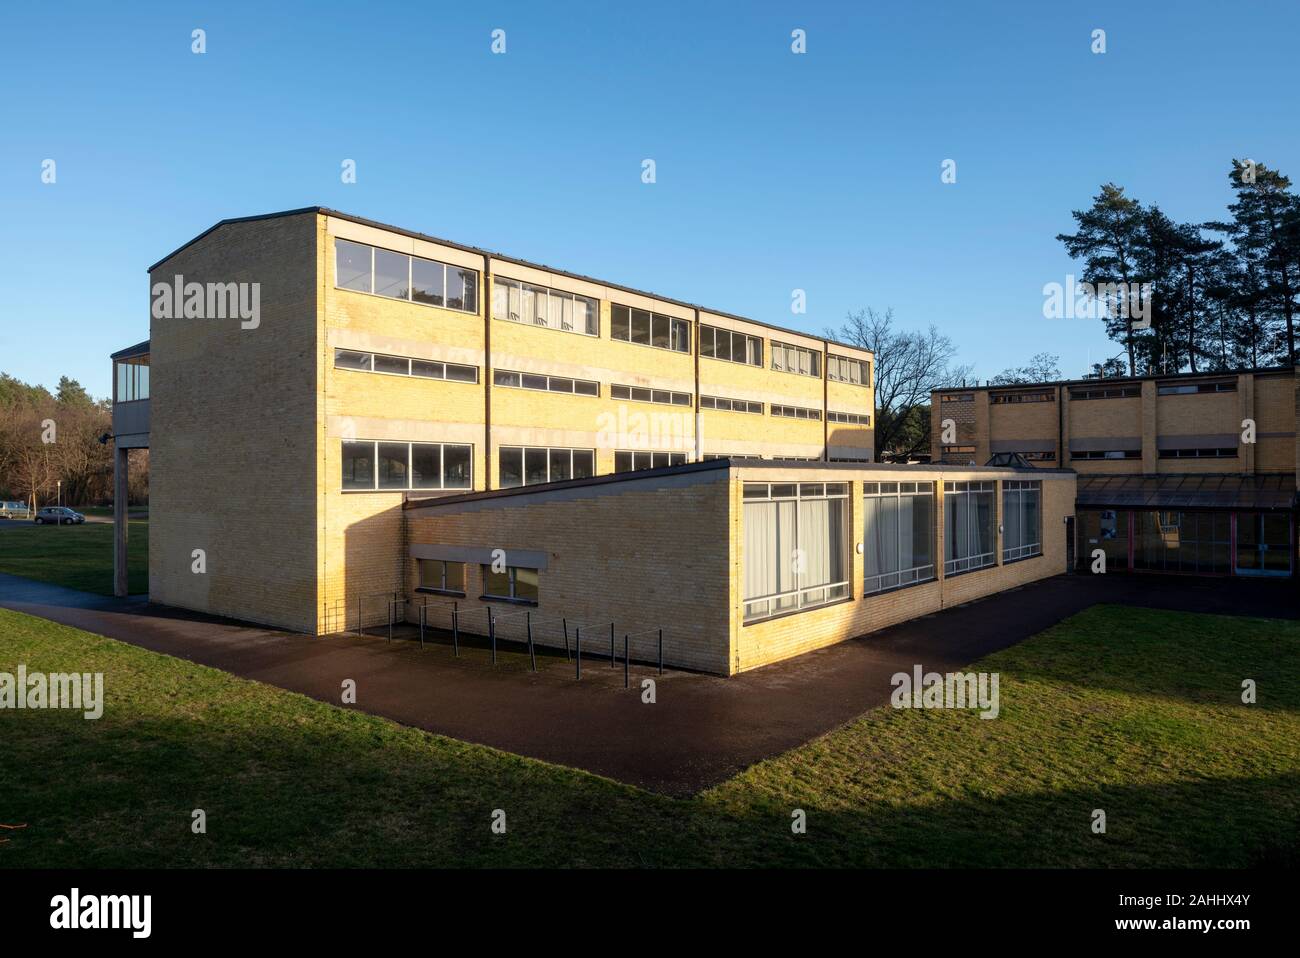 Bernau, Bundesschule des Allgemeinen Deutschen Gewerkschaftsbundes, 1928-1930 von Hannes Meyer und Hans Wittwer erbaut. Sporthalle, darüber drei Klass Stock Photo